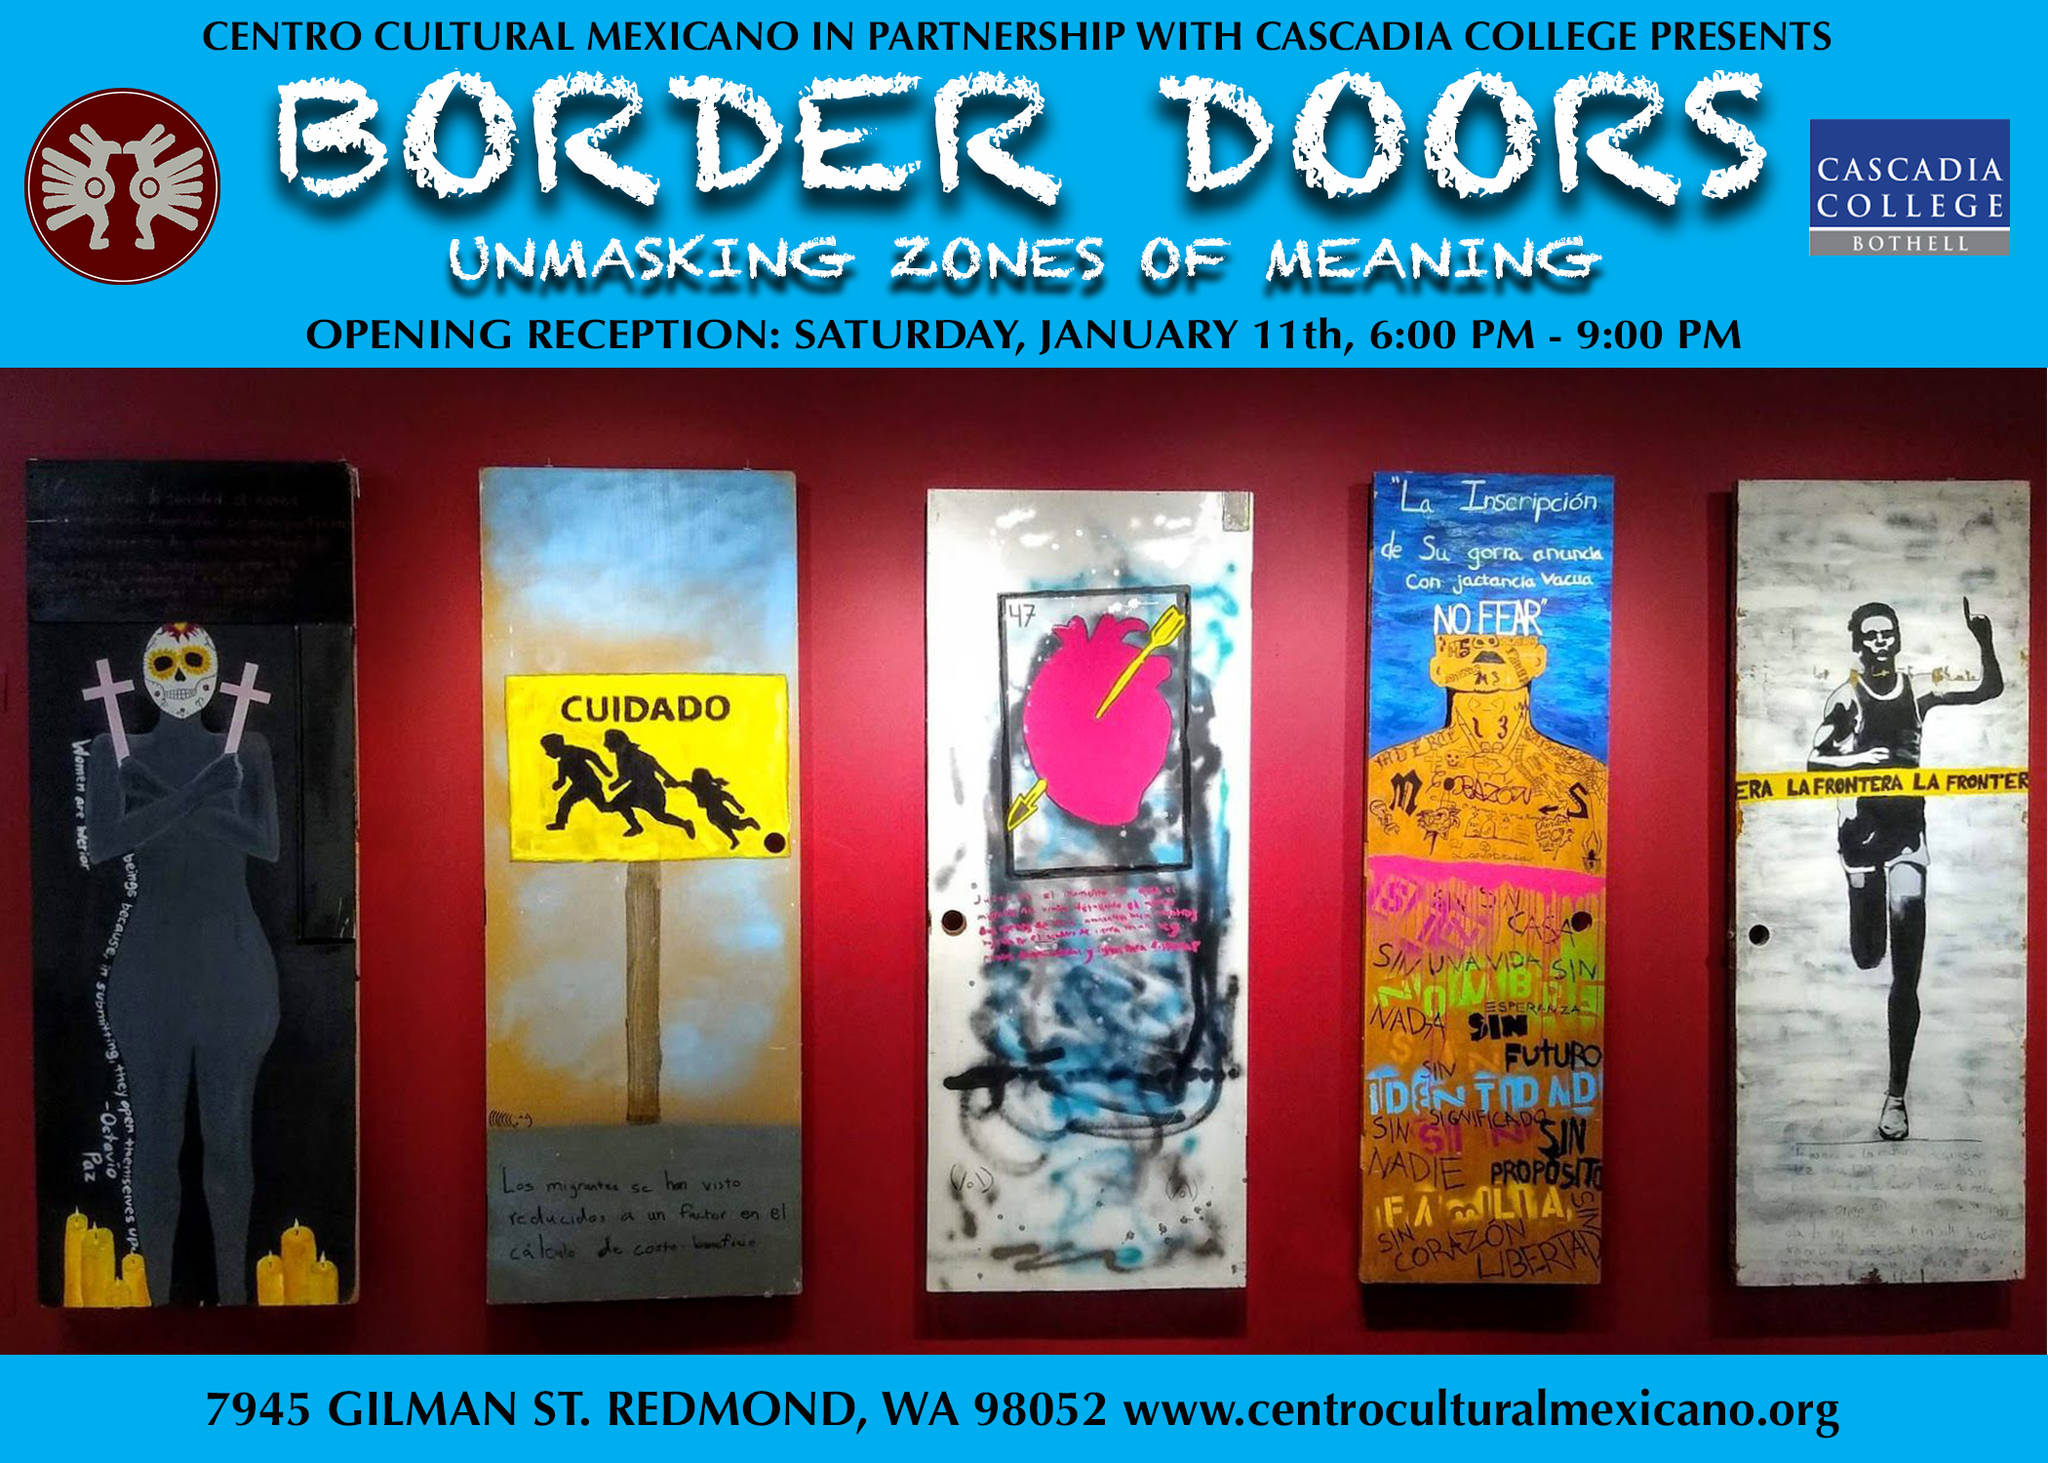 El Centro Cultural Mexicano en conjunto con Cascadia College te invitan a la exposición “Puertas Fronterizas“